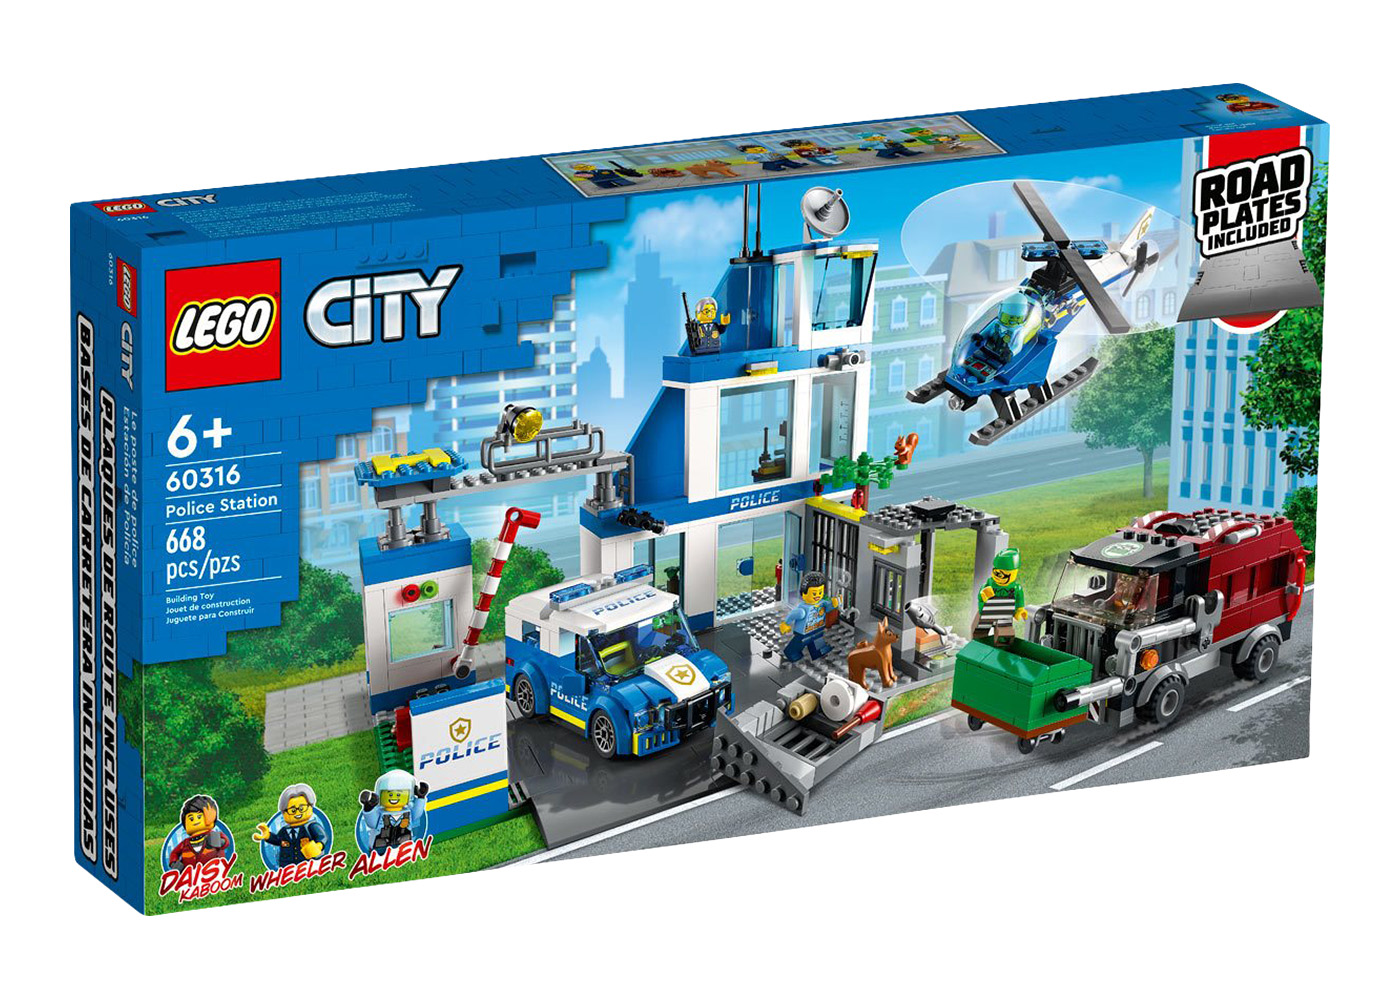 LEGO City Police Station Chase Set 60370 - TW